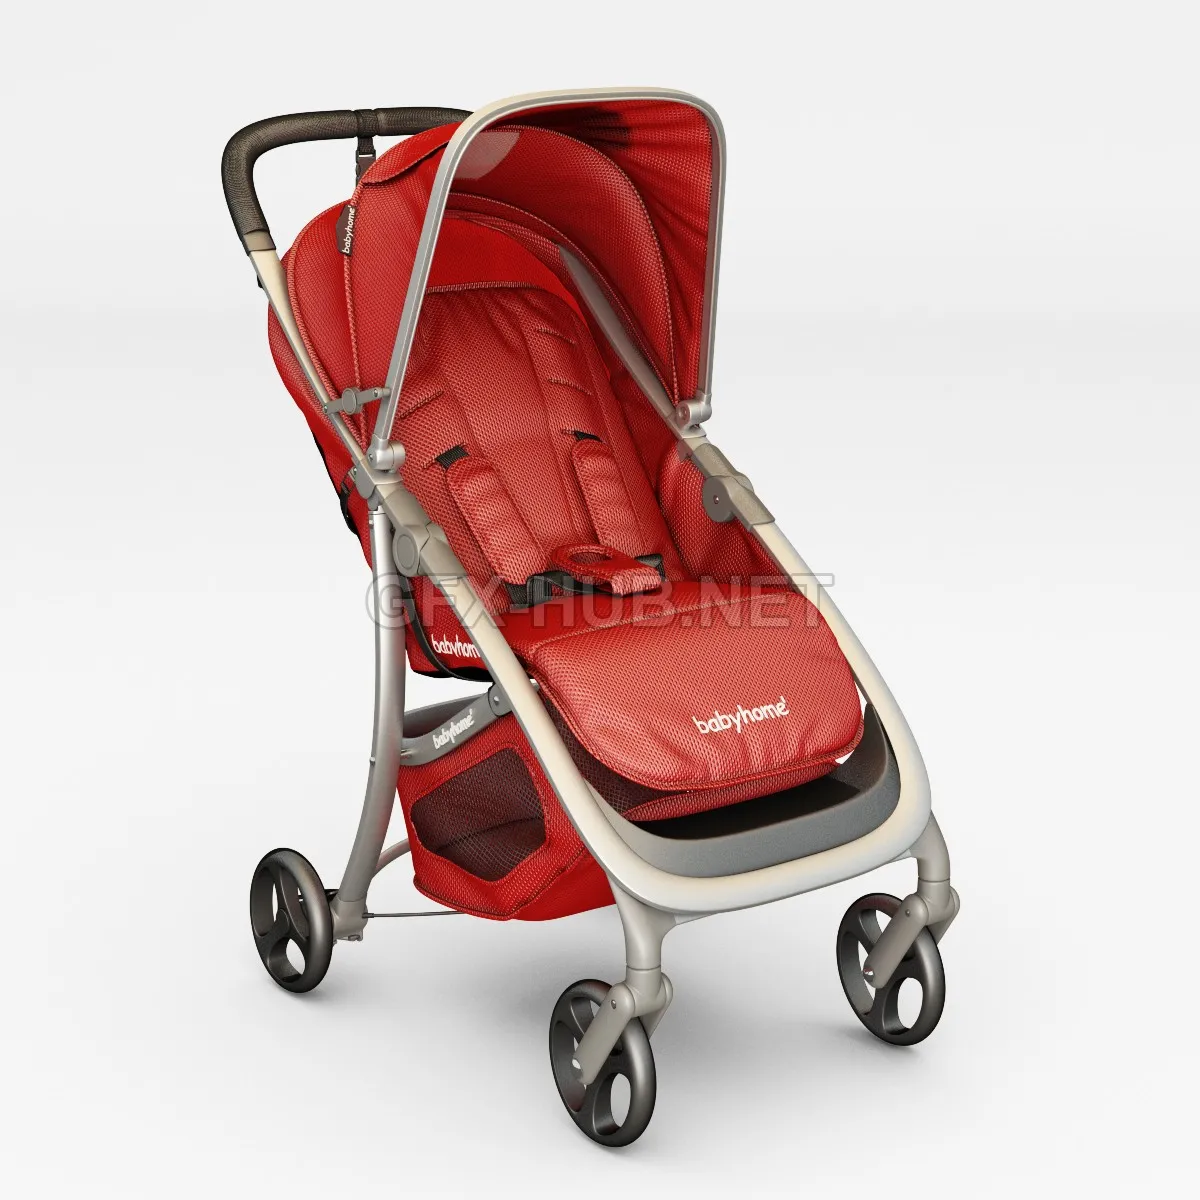 FURNITURE 3D MODELS – BabyHome Emotion stroller